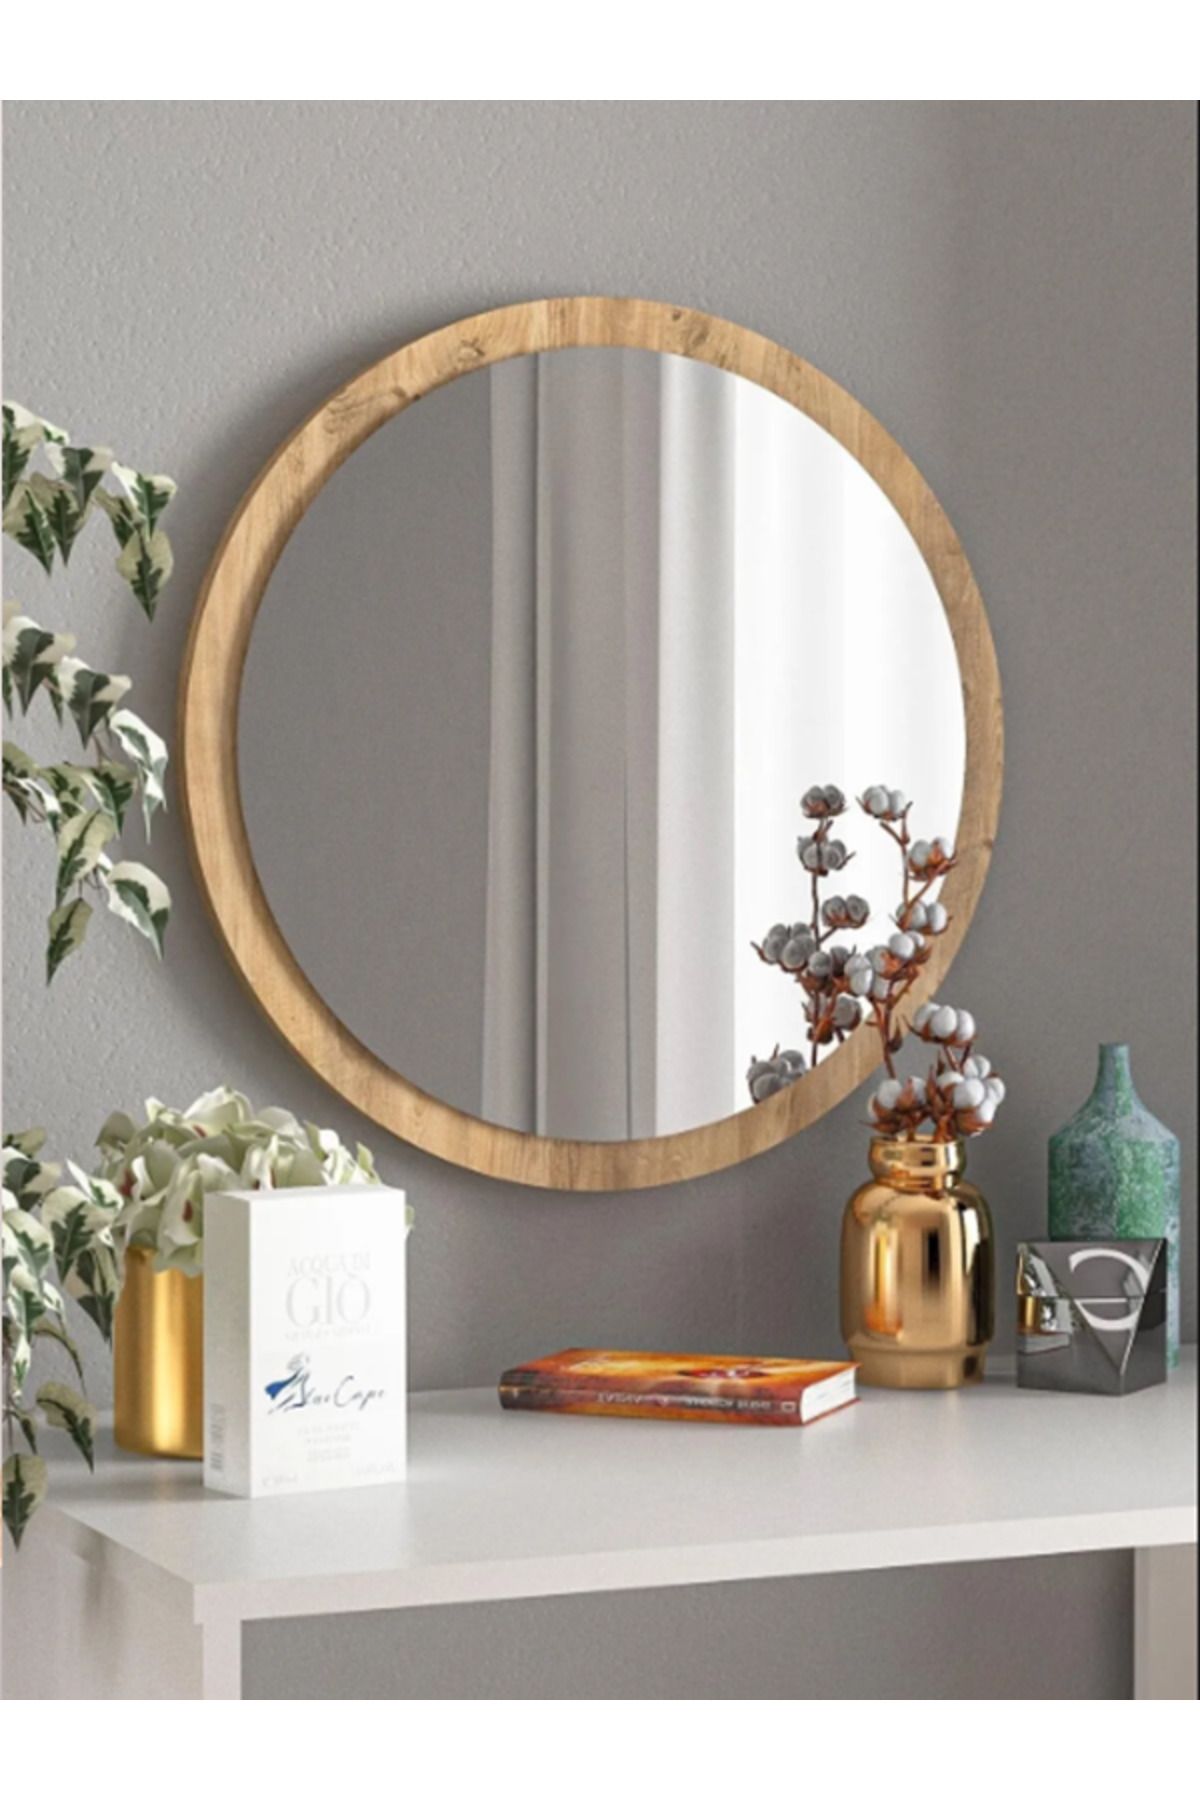 er enirey collection Açık Ceviz Dekoratif Yuvarlak Antre Hol Koridor Duvar Salon Mutfak Banyo Wc Ofis Aynası 50 cm